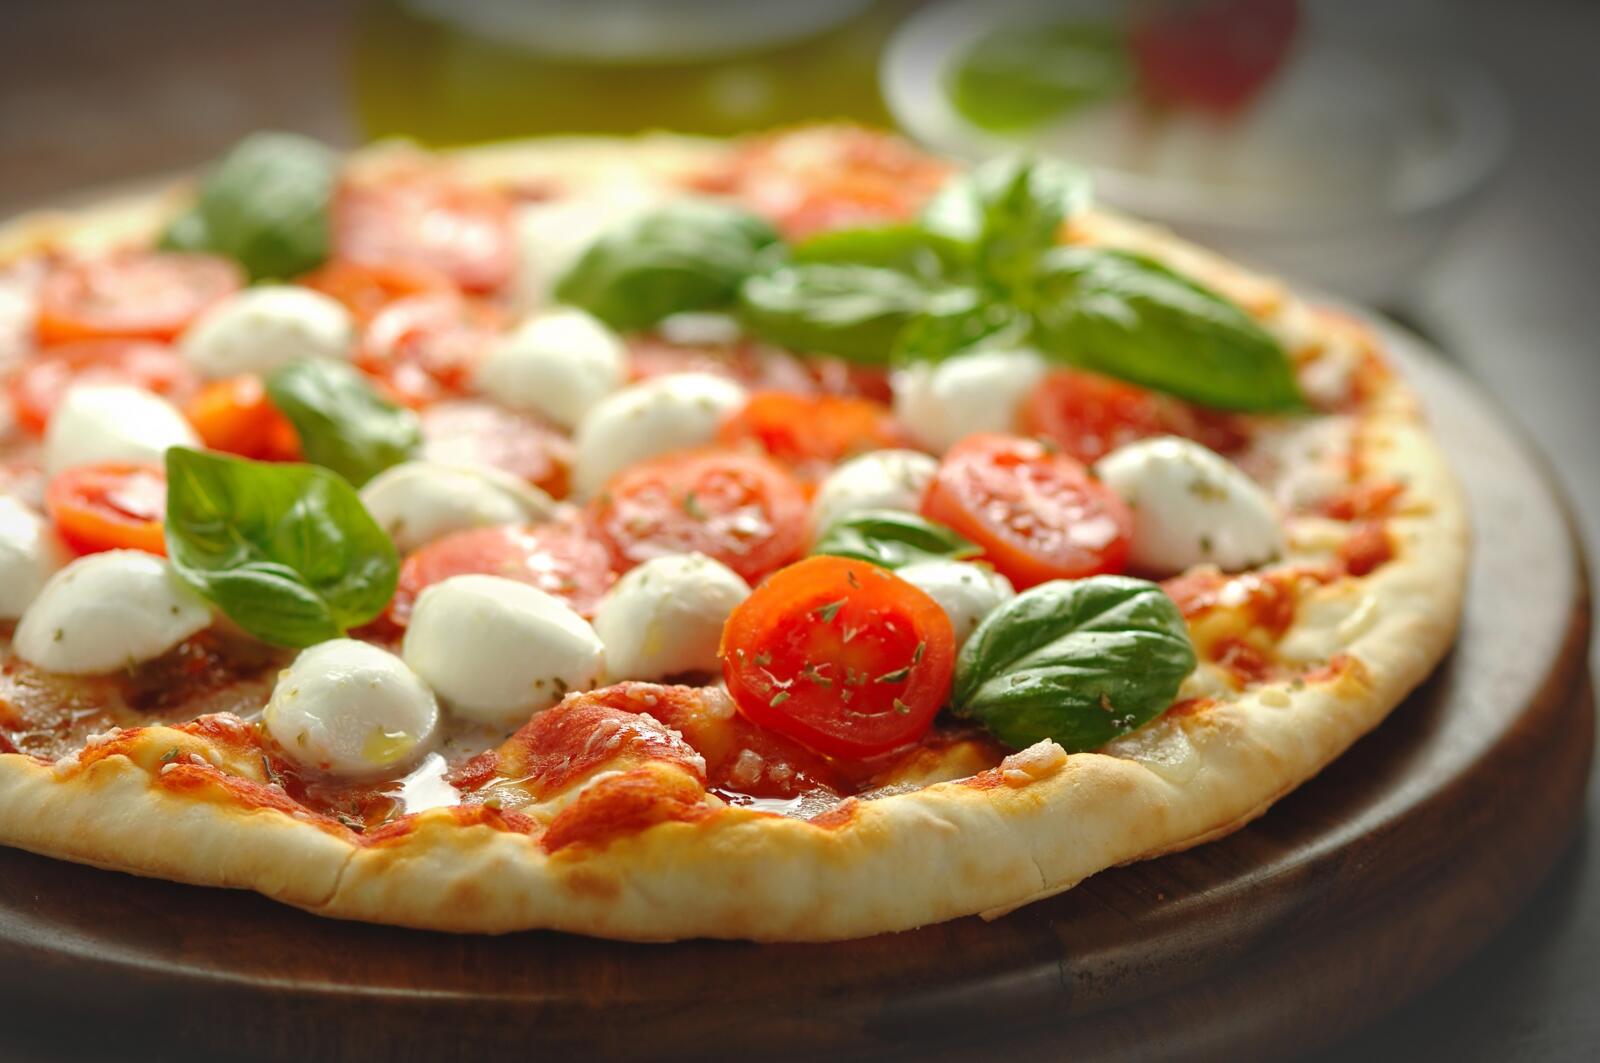 Berg kleding op versneller hoop Hoe gebruik ik een pizzasteen in de oven? | Dagelijkse kost